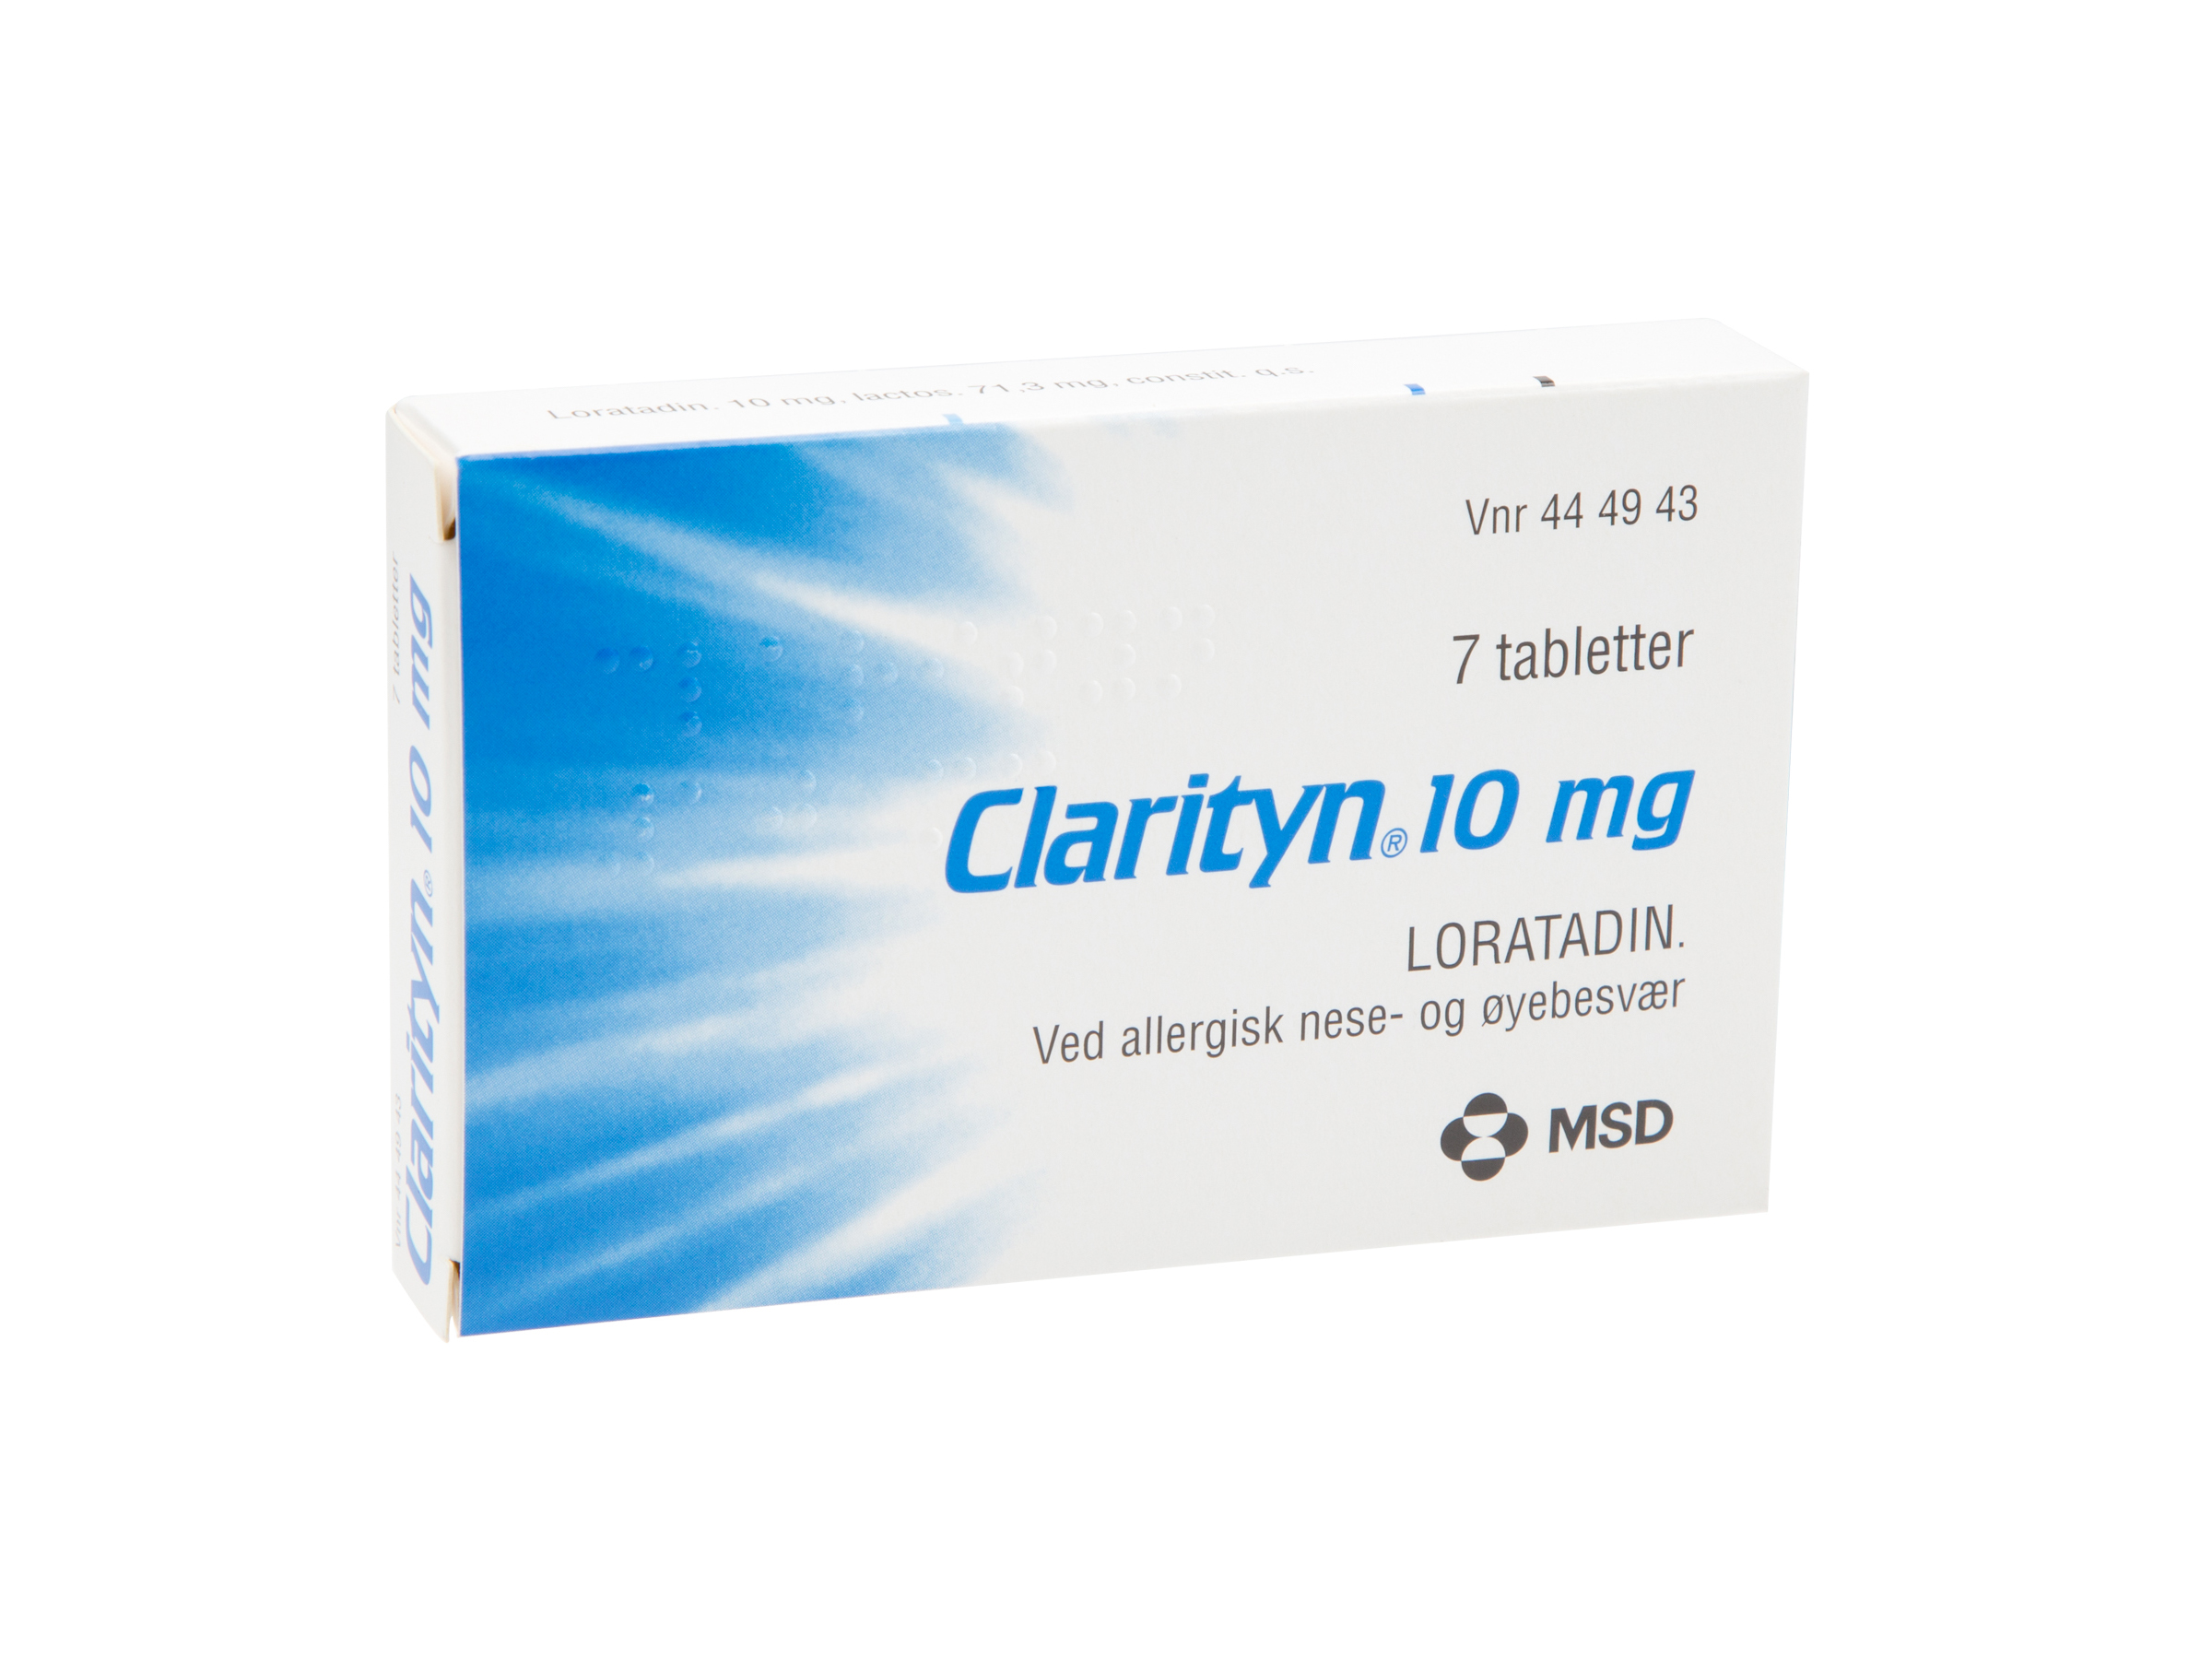 Clarityn tabletter 10mg, 7 stk. på brett